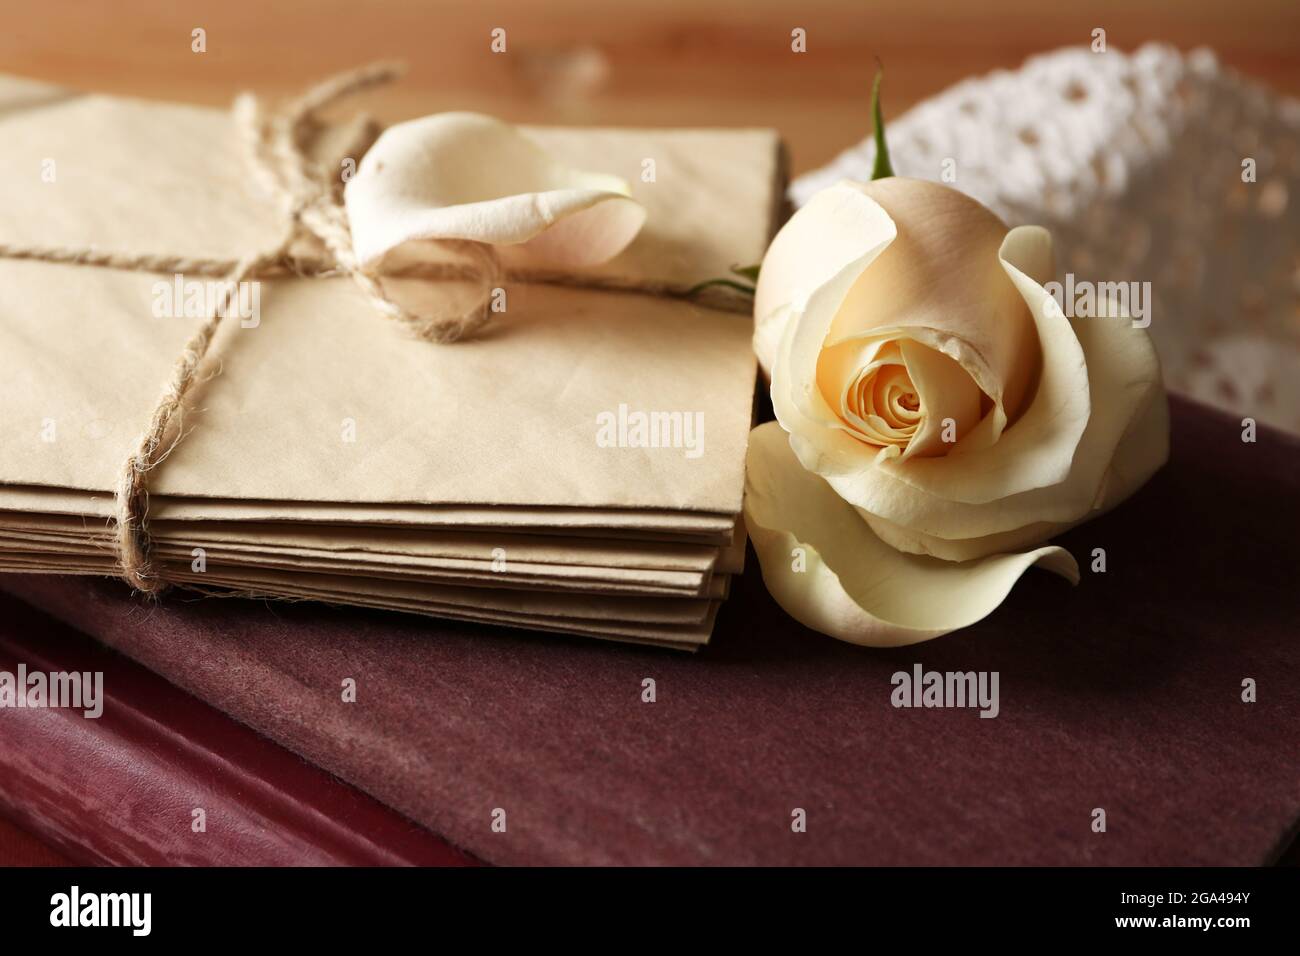 Thiết kế trang trí tiệc cưới với hoa hồng tươi, sách cũ và chữ cái trên bàn gỗ màu nâu cổ điển sẽ làm tăng thêm sự đặc biệt, đầy sáng tạo và nổi bật. Bức ảnh này sẽ mang lại cho người xem cảm giác thoải mái và tâm trạng vui tươi.